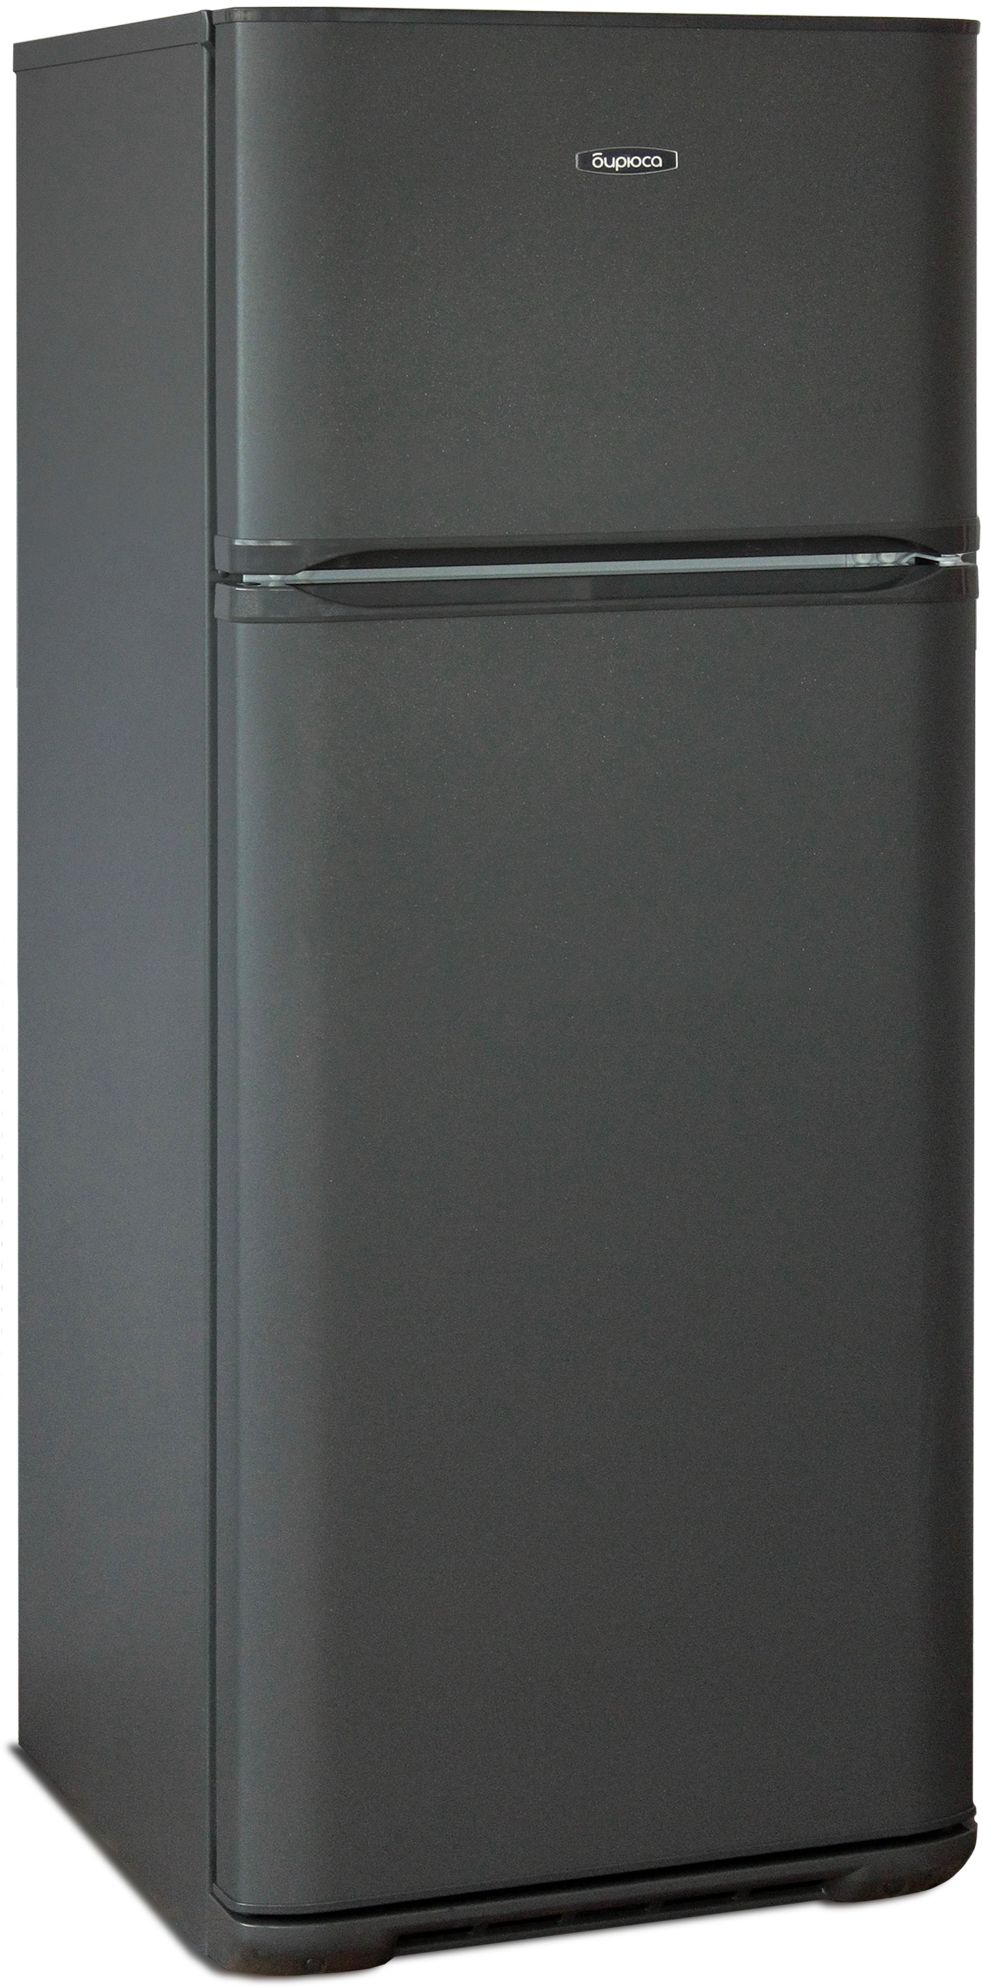 холодильник бирюса 136, купить в Красноярске холодильник бирюса 136,  купить в Красноярске дешево холодильник бирюса 136, купить в Красноярске минимальной цене холодильник бирюса 136